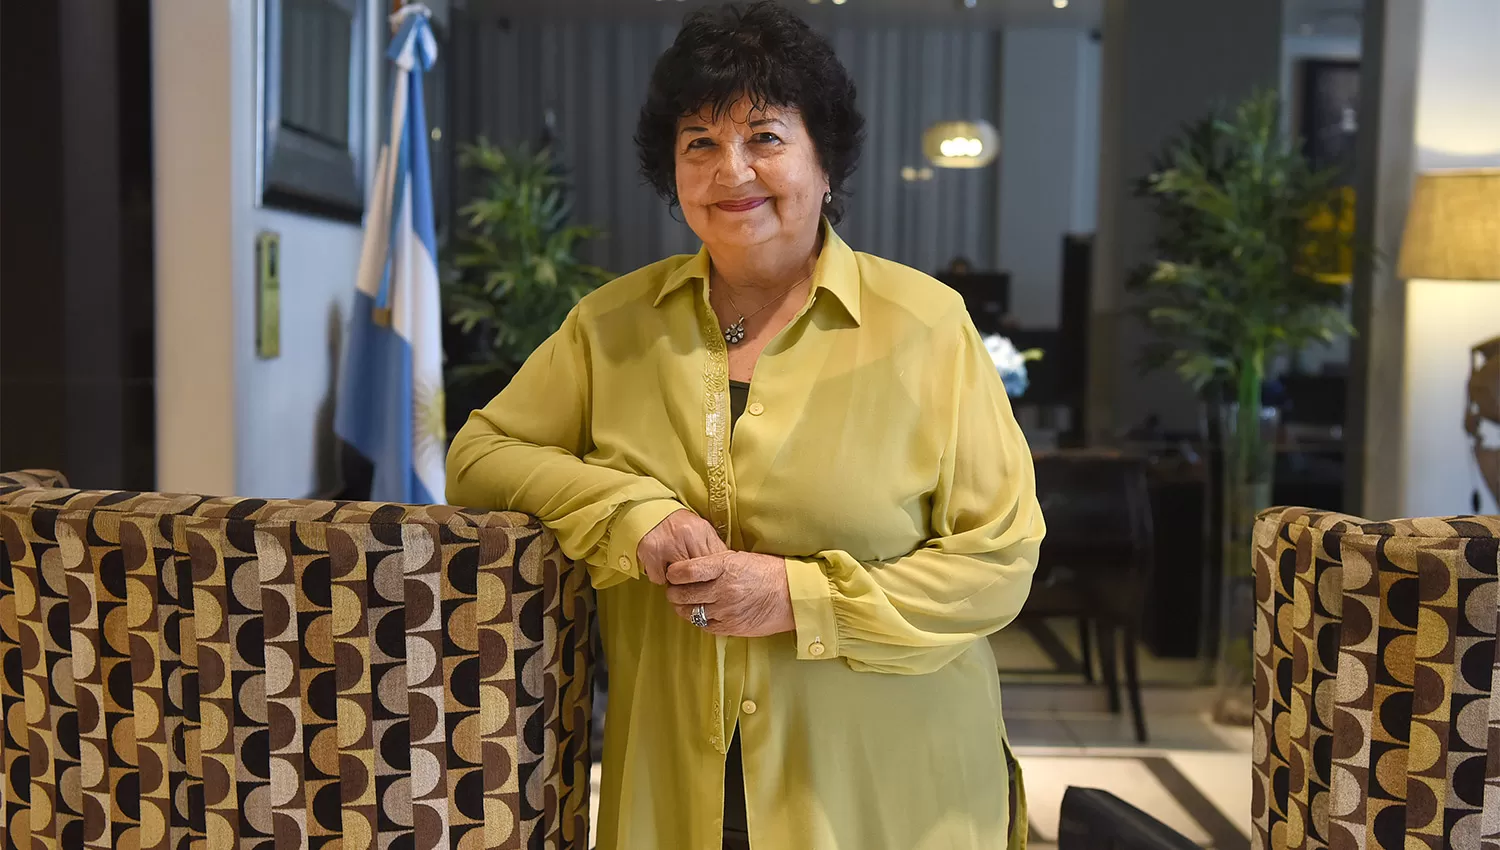 PREMIADA. La docente e investigadora Dora Barrancos recibió el Premio Konex 2016 y la la Mención de honor Domingo Faustino del Senado en 2018.